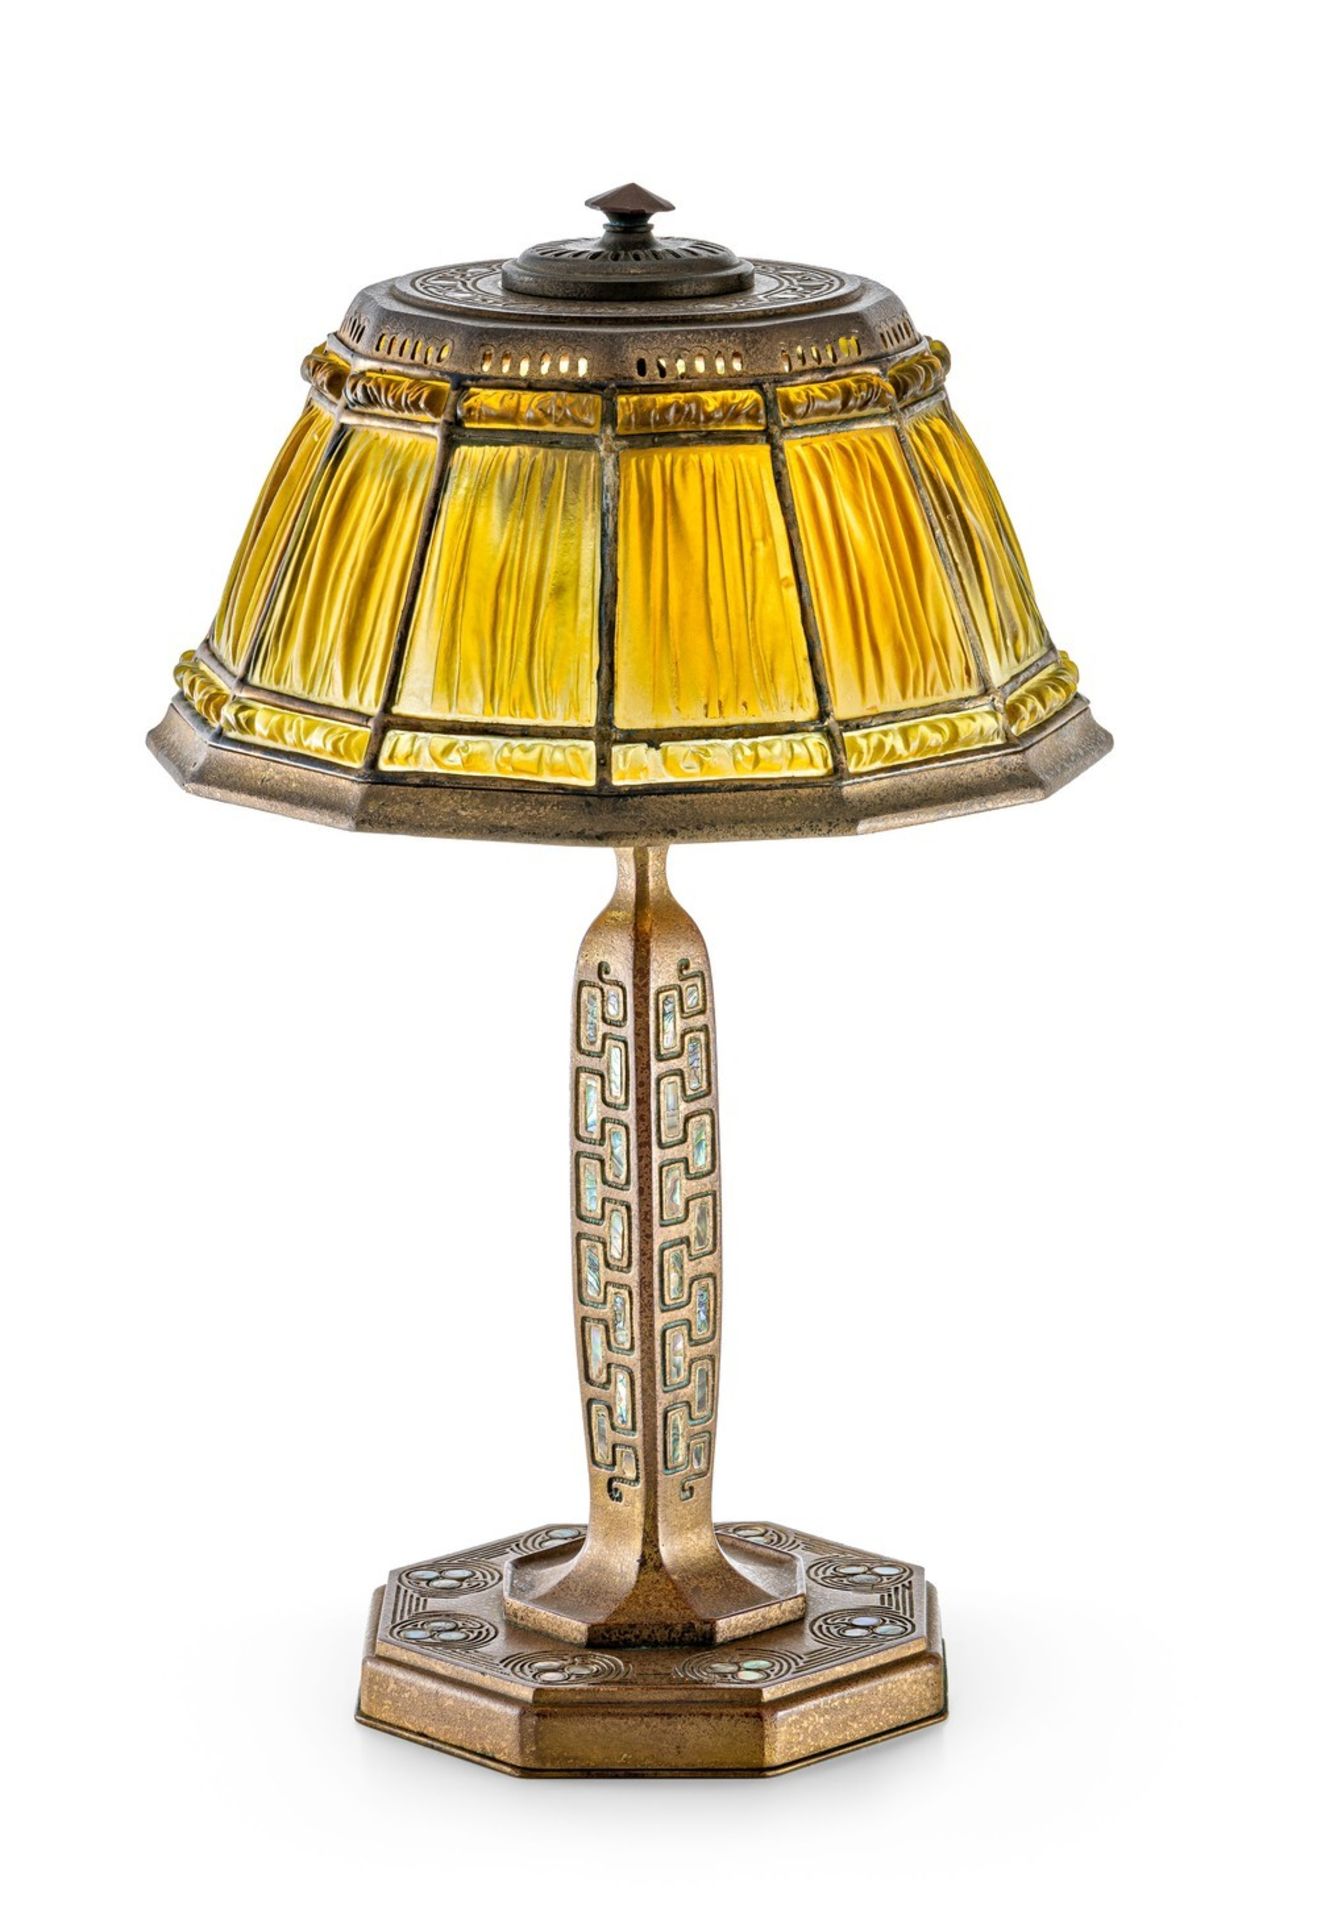 Tischlampe "Abalone Linenfold" Tiffany Studios, New York, um 1910